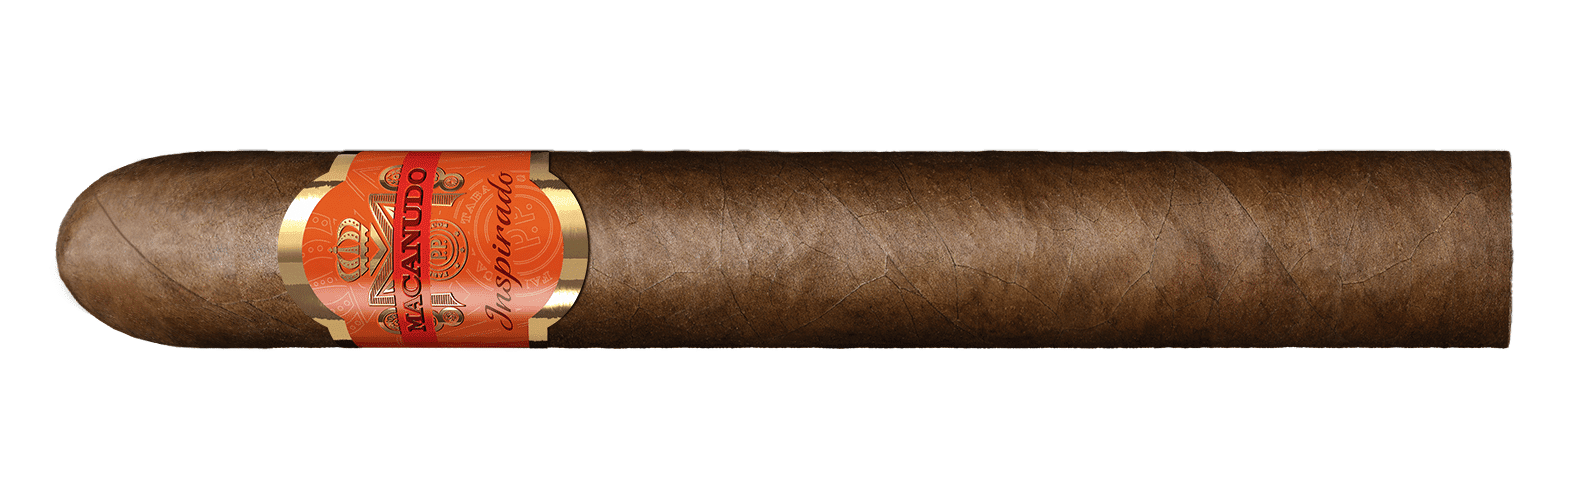 macanudo-announces-inspirado-orange-cigarillos-–-cigar-news